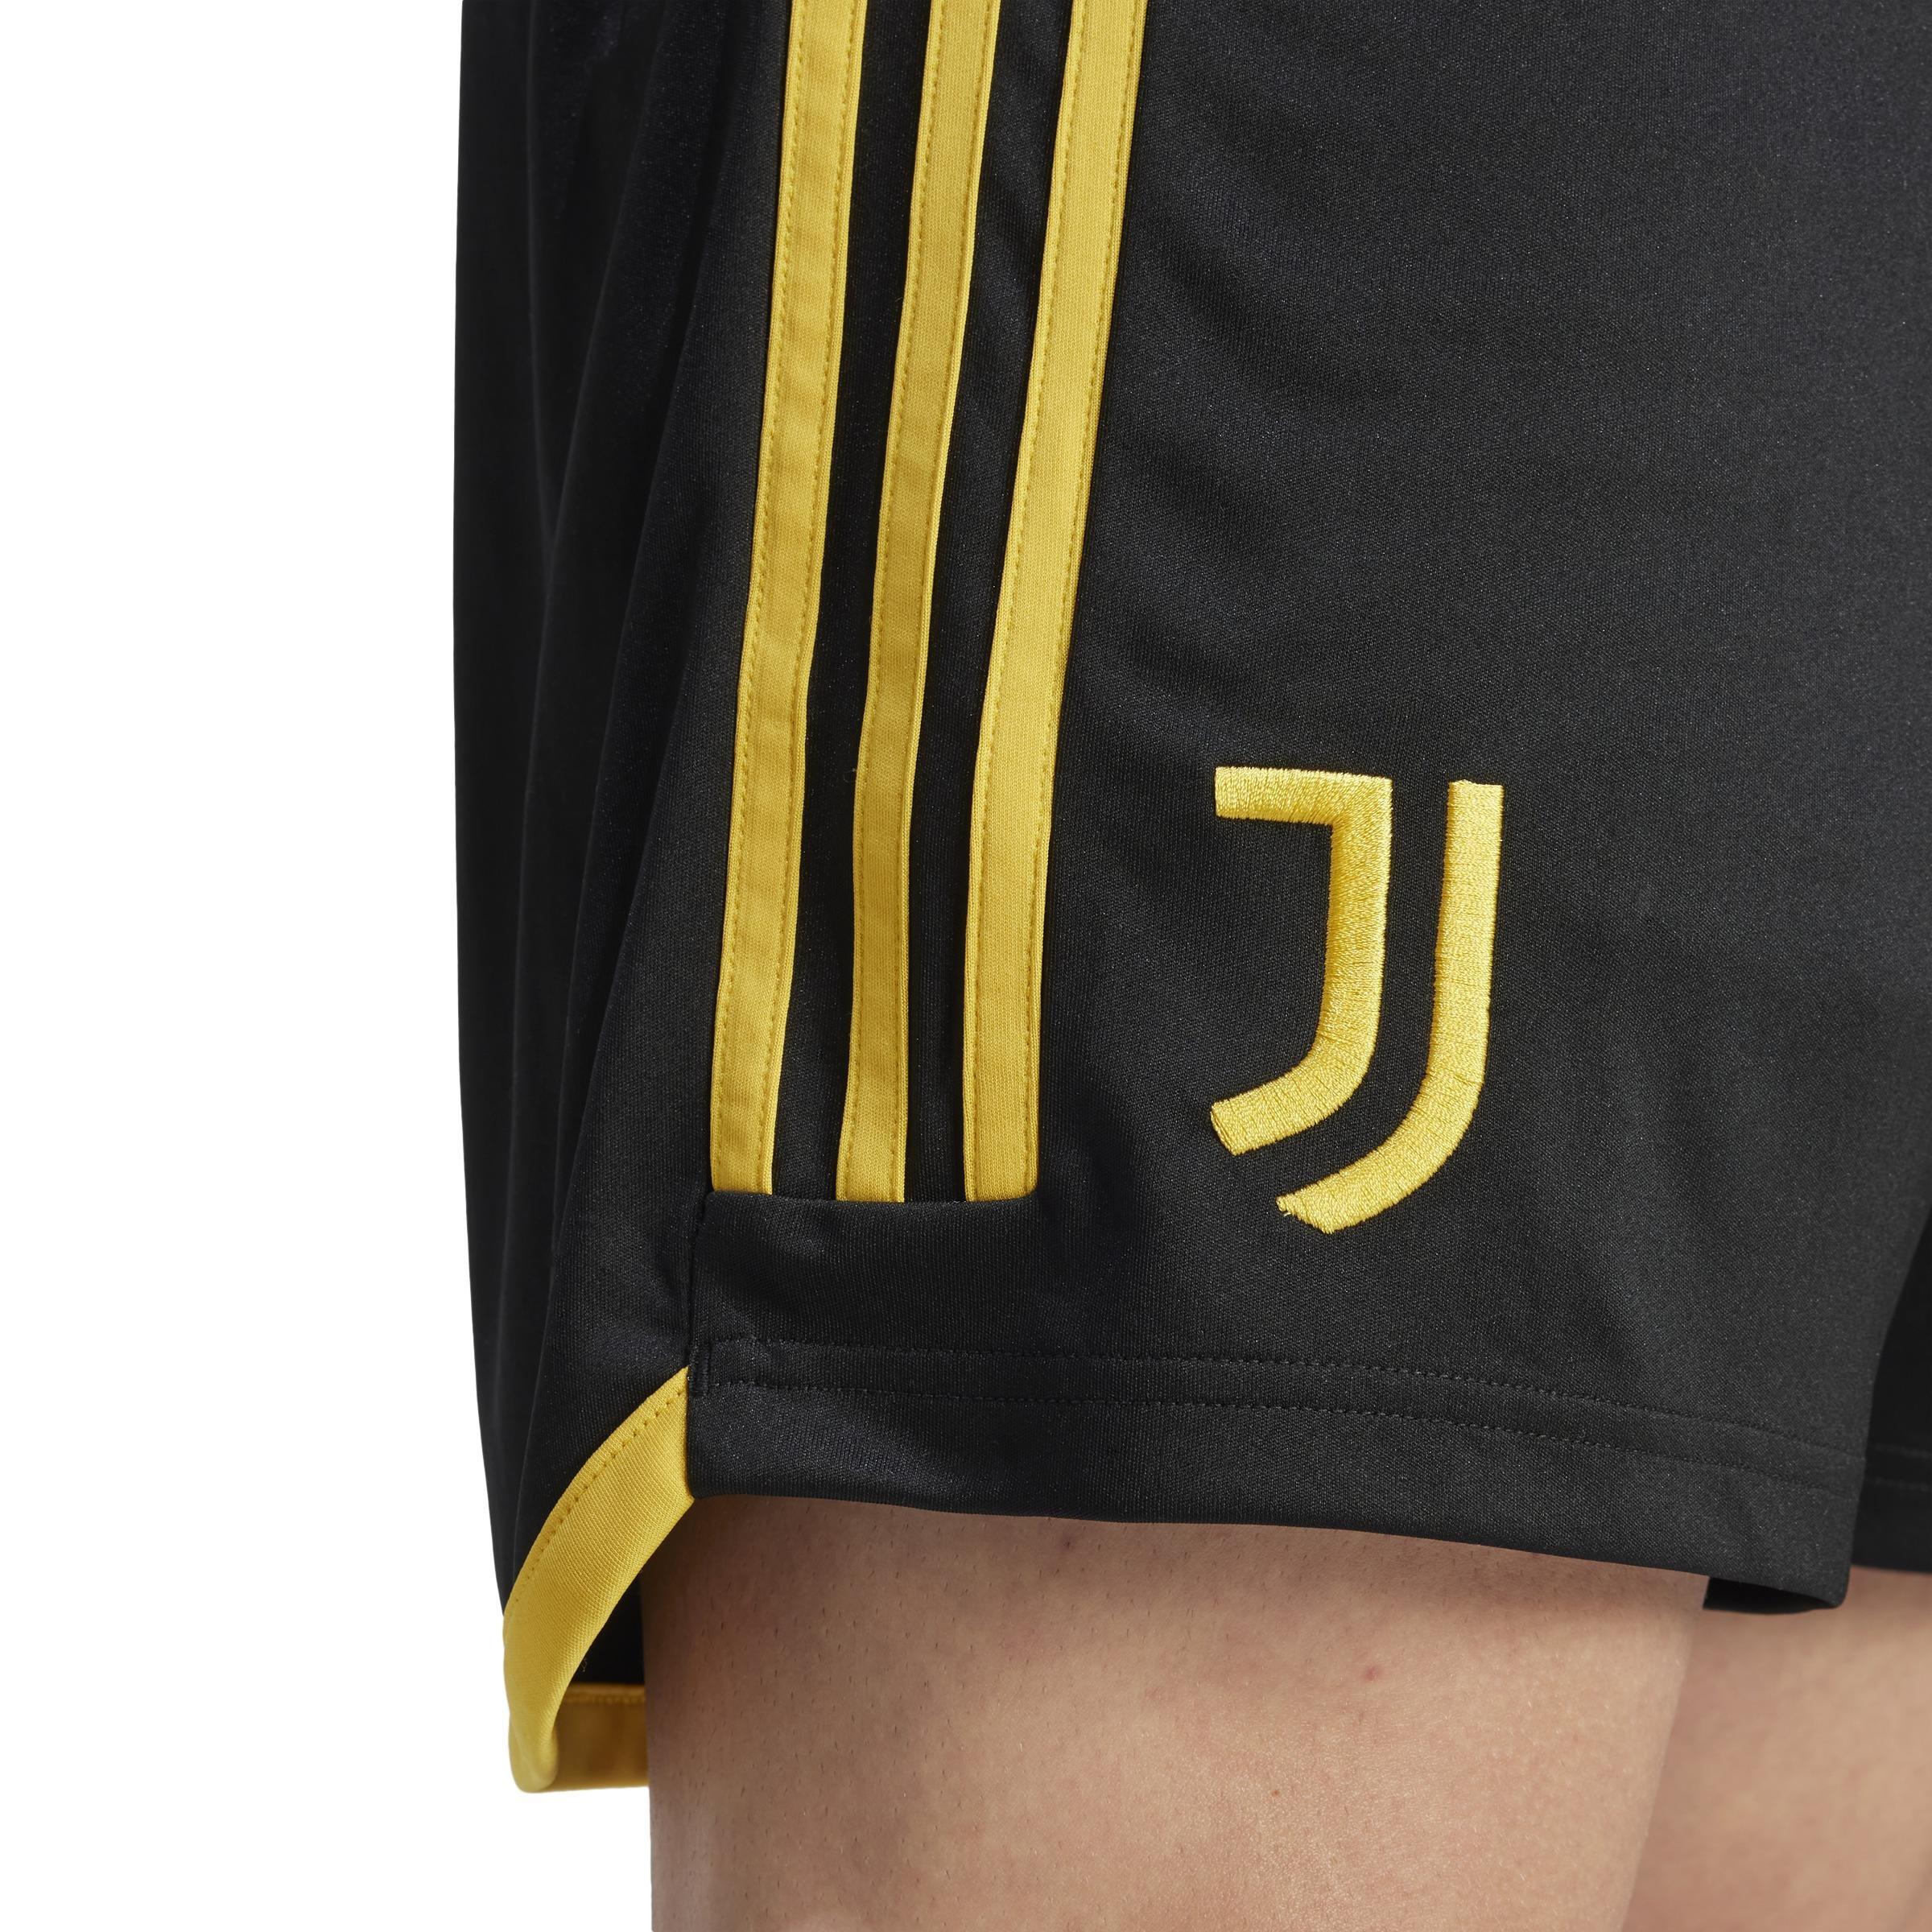 adidas - Men Juventus 23/24 Home Shorts, Black